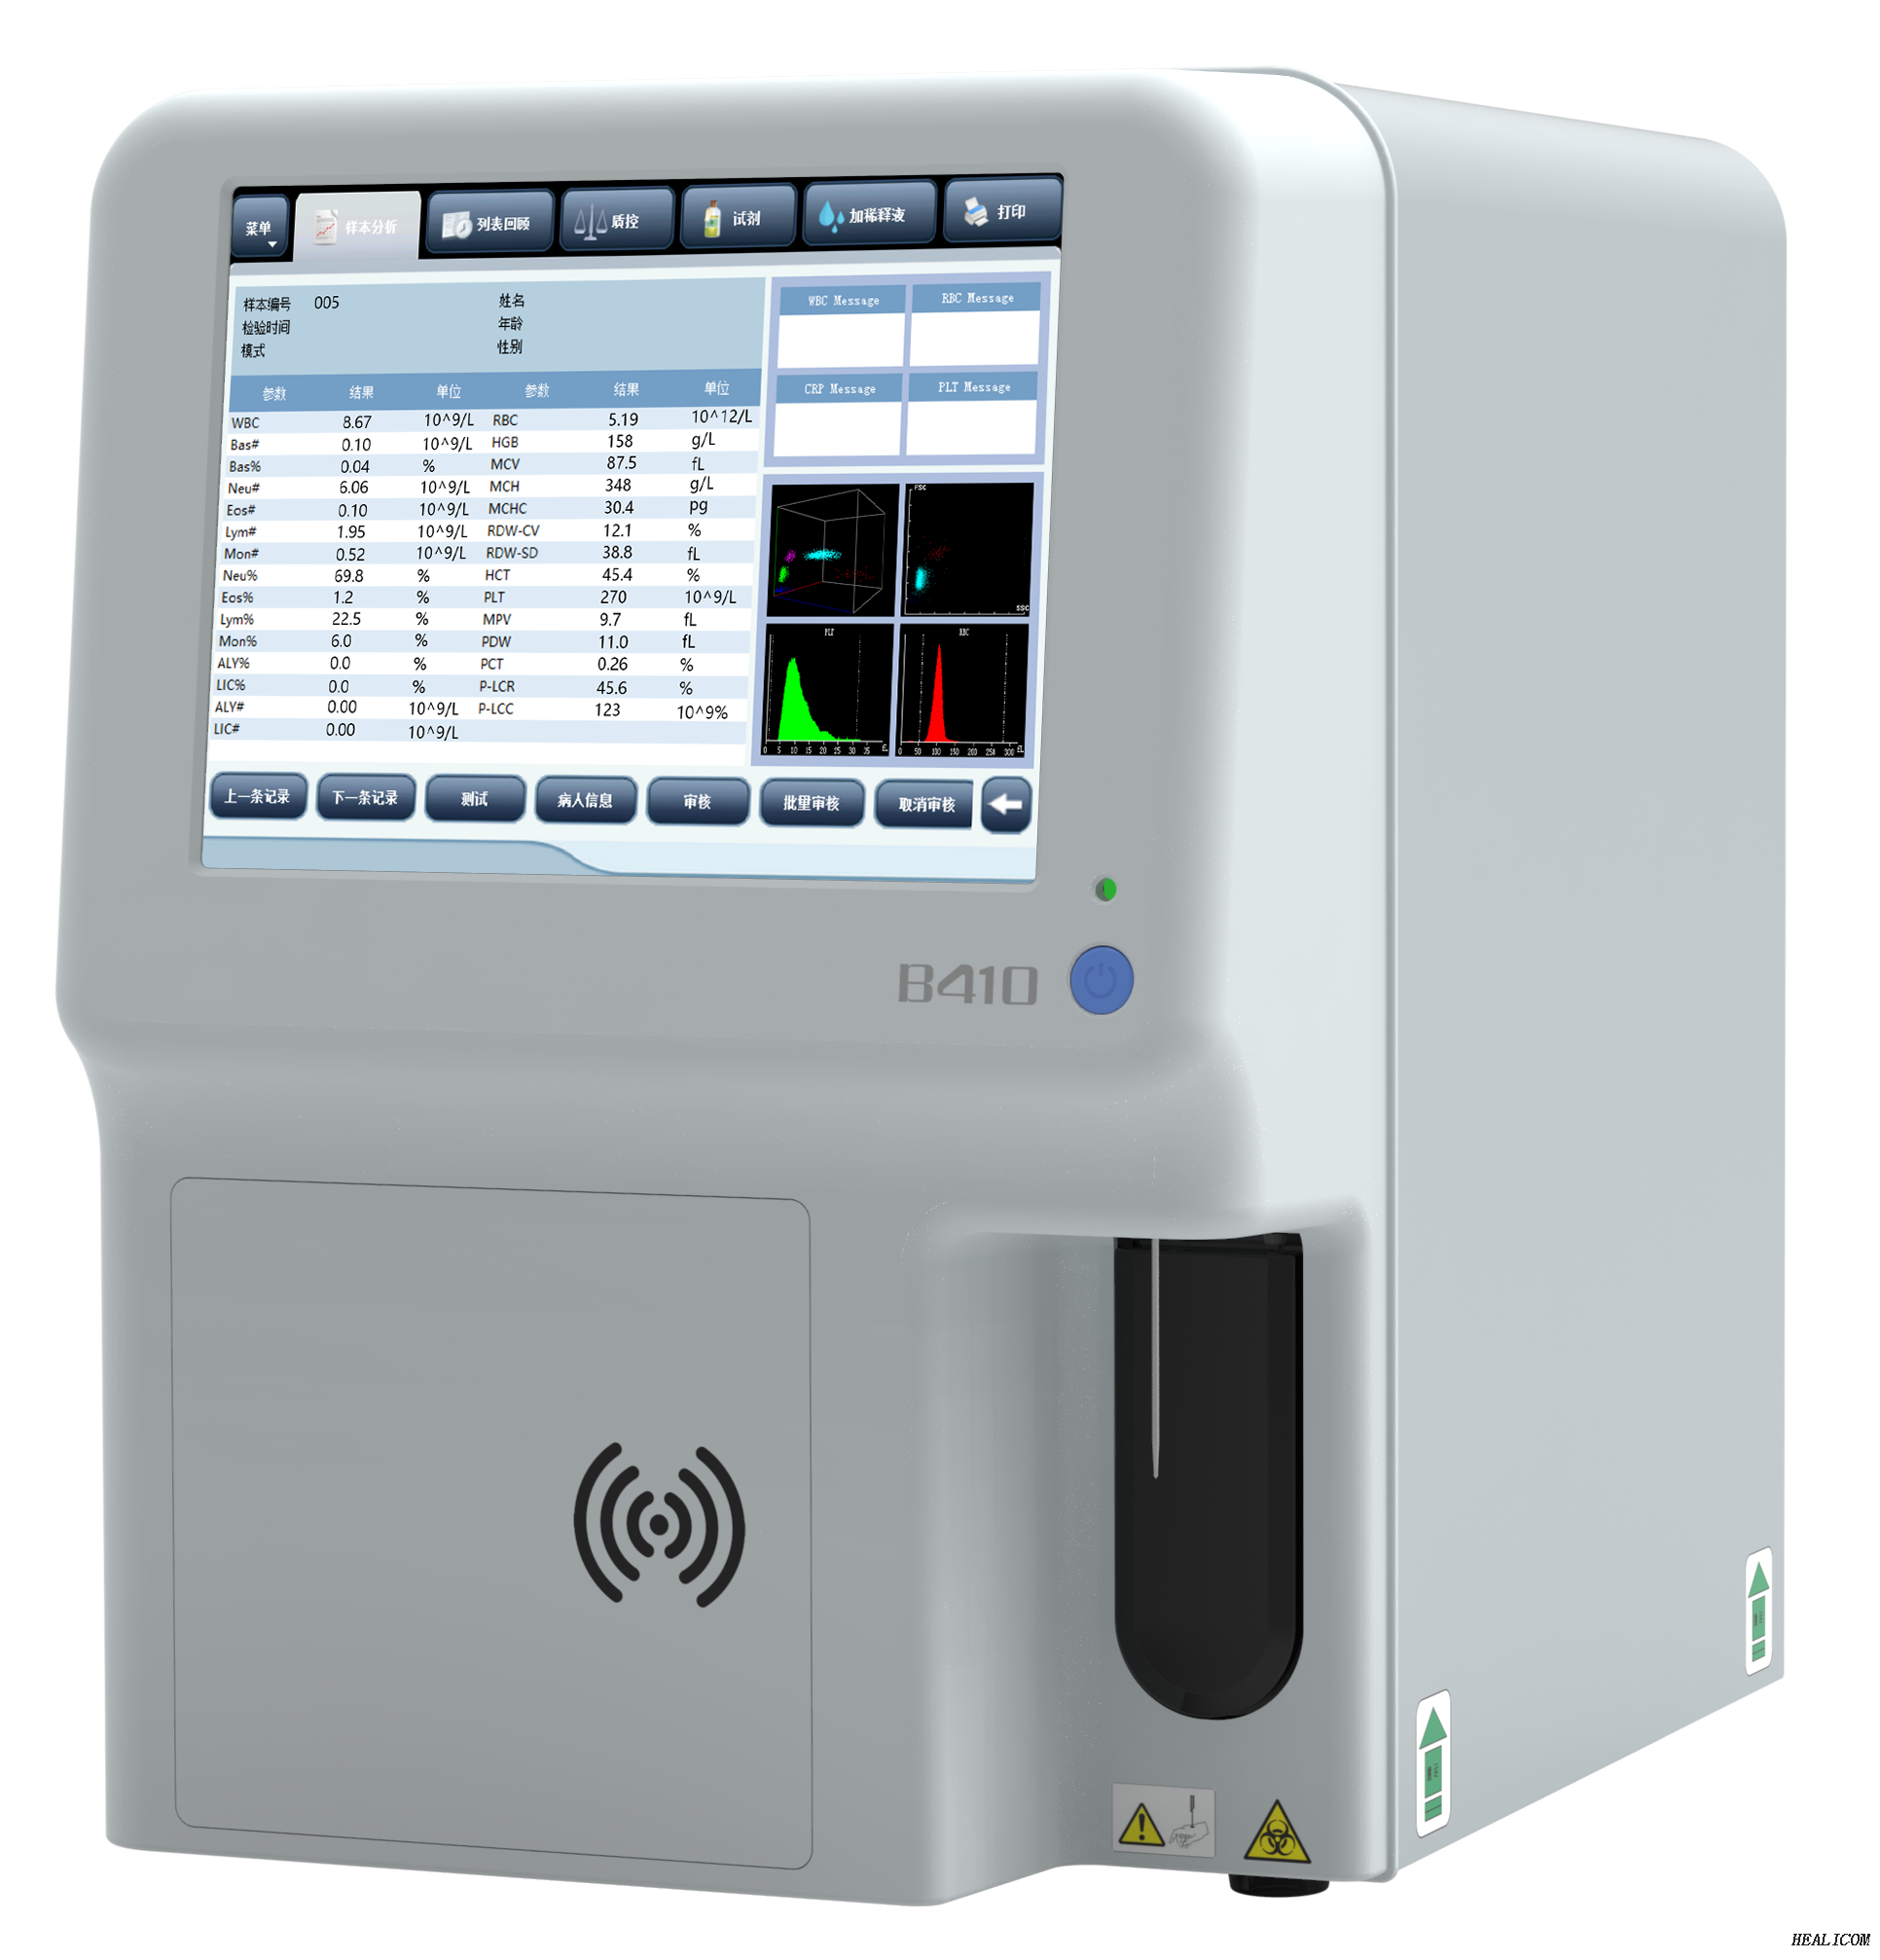 Analyseur d'hématologie H410 de l'équipement de diagnostic Healicom Analyseur d'hématologie entièrement automatisé en 5 parties